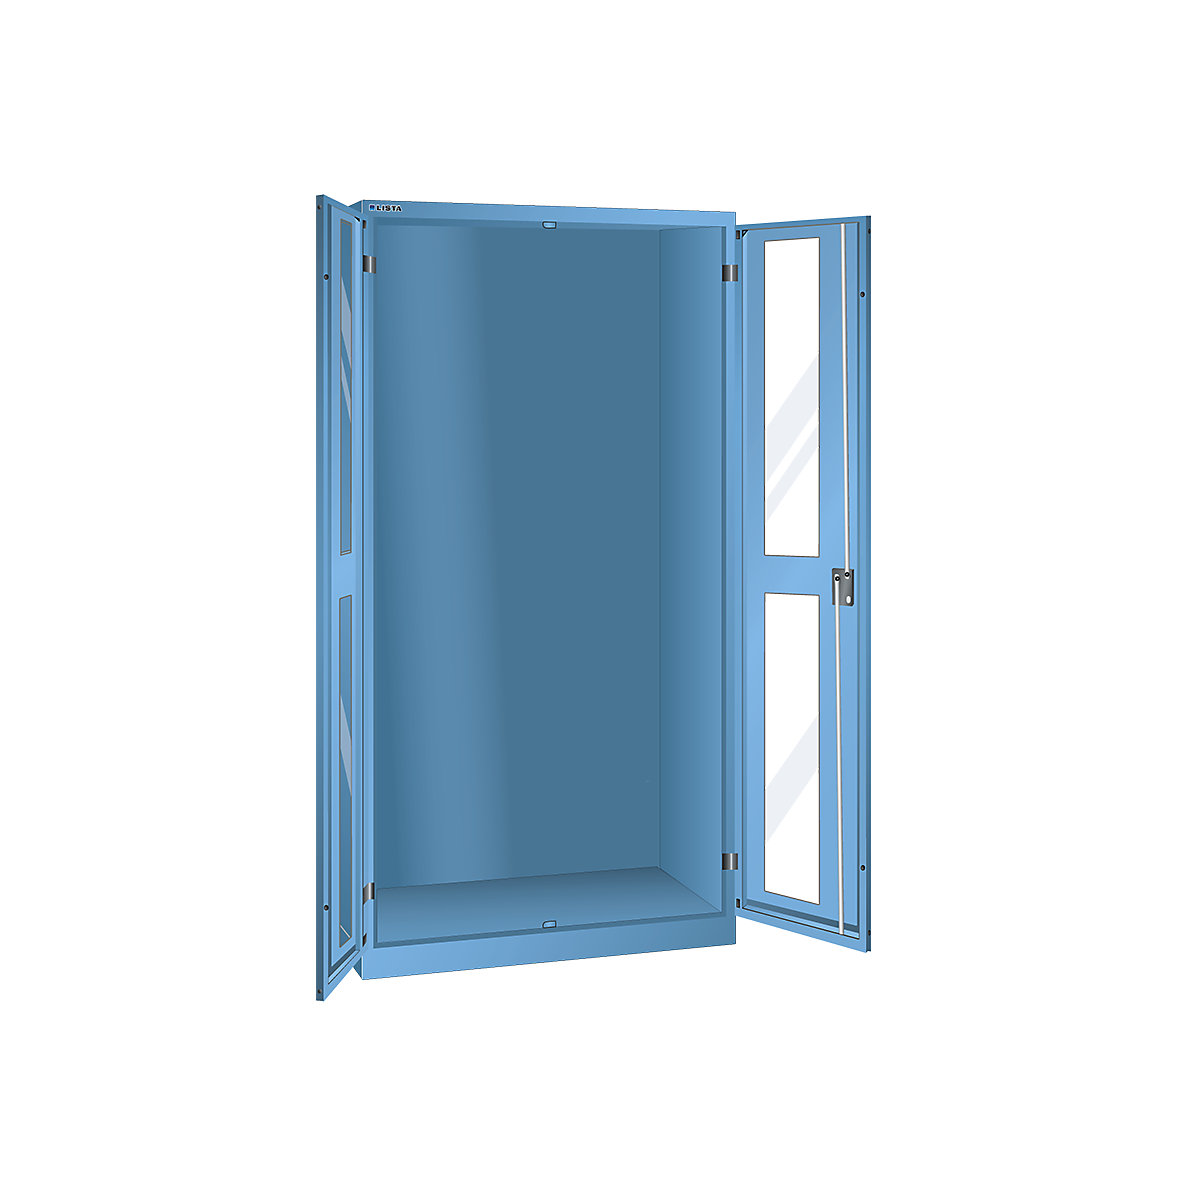 Armário com janelas de visualização, AxLxP 1950 x 1000 x 580 mm – LISTA